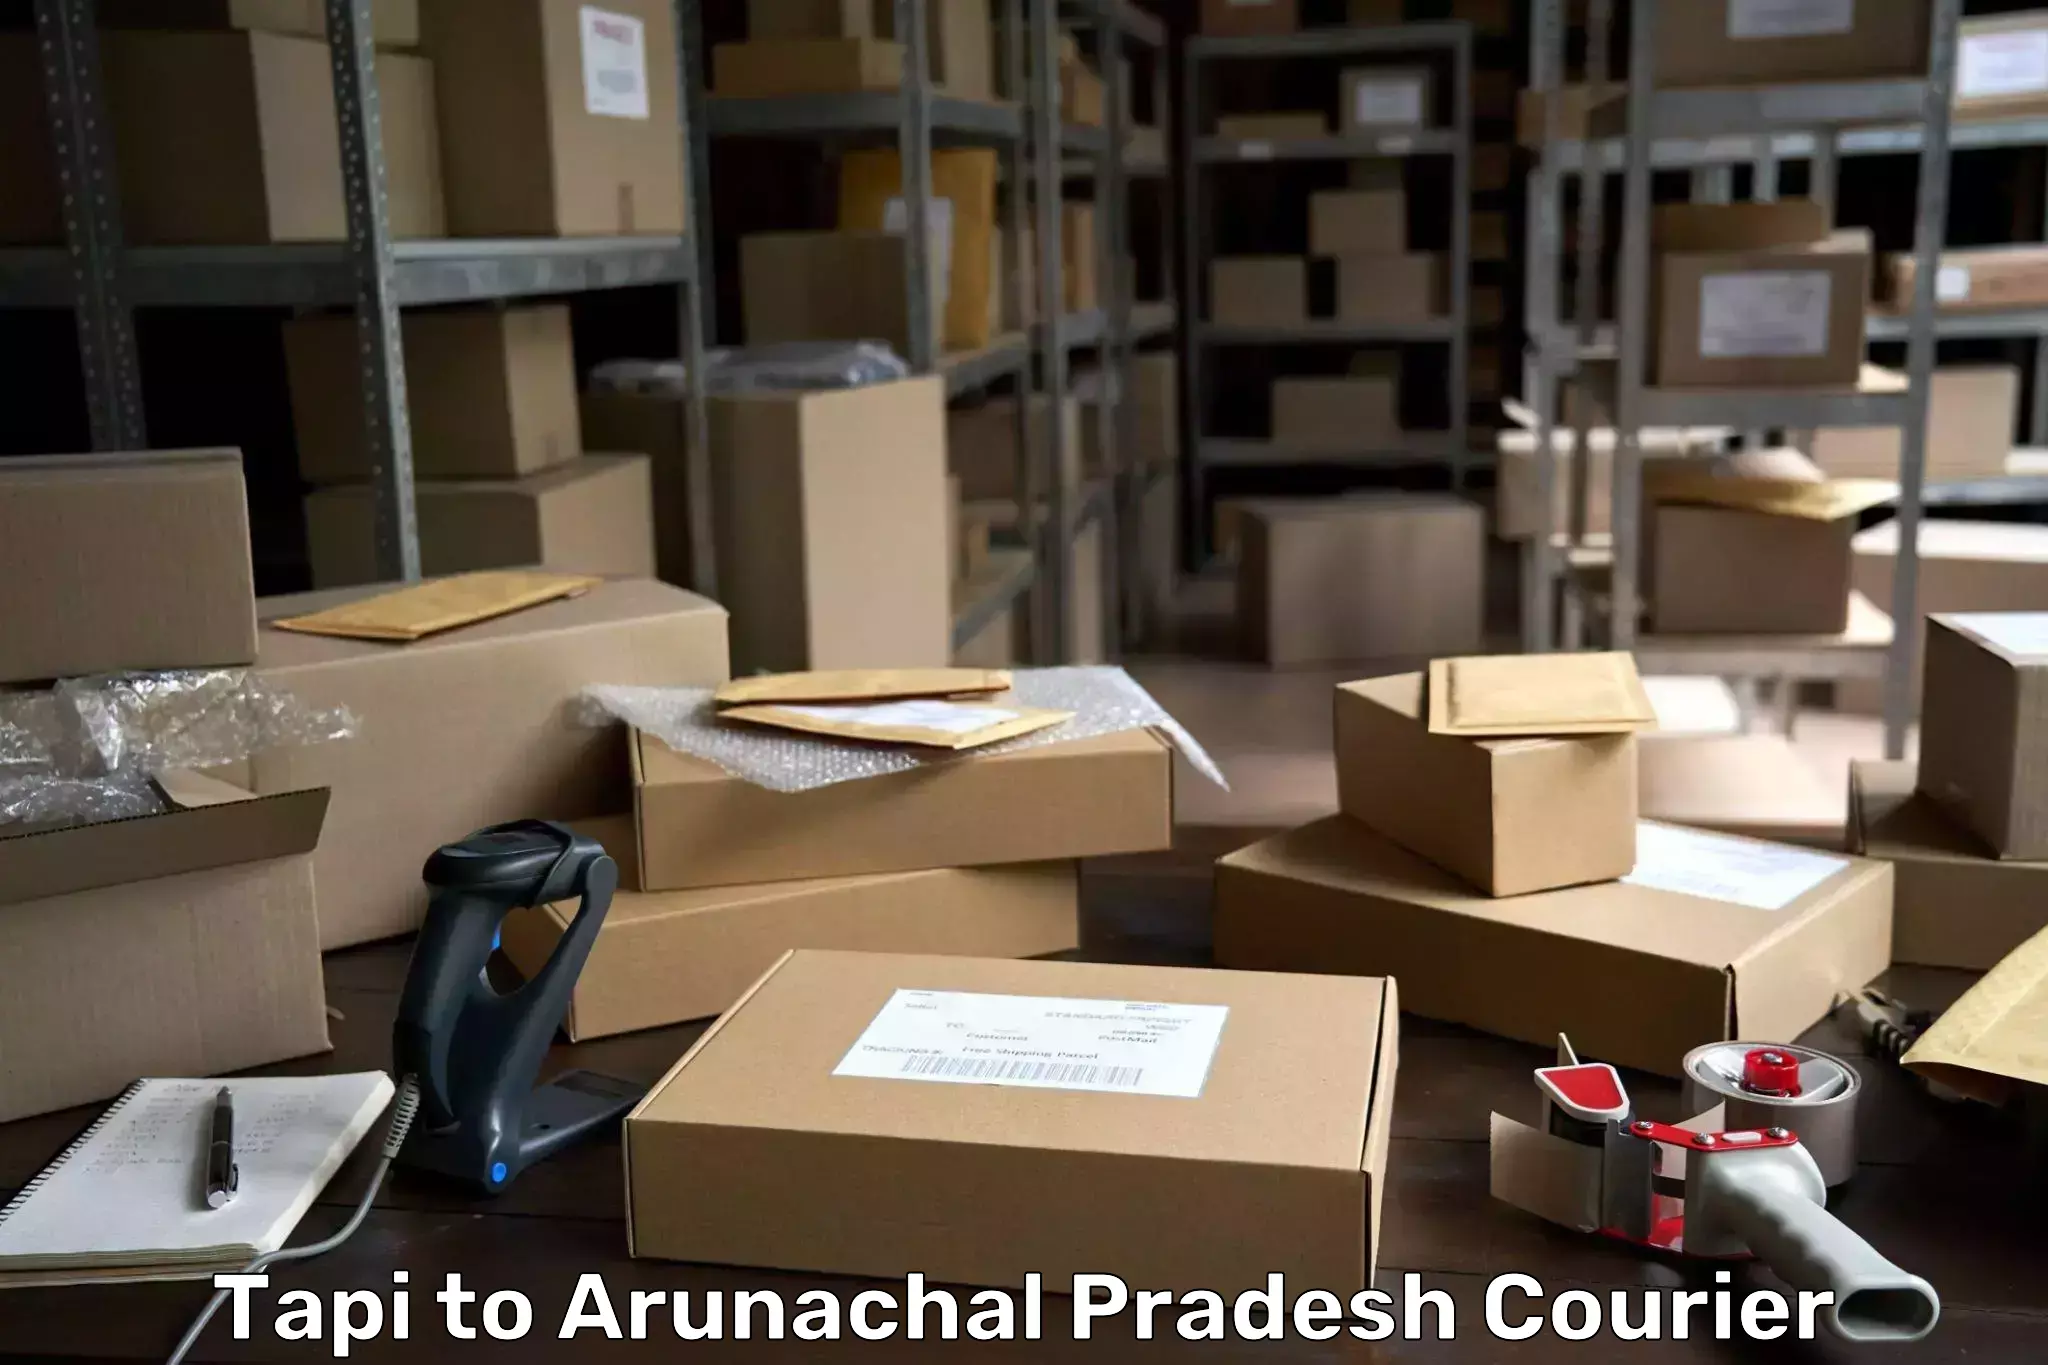 Pharmaceutical courier Tapi to Arunachal Pradesh